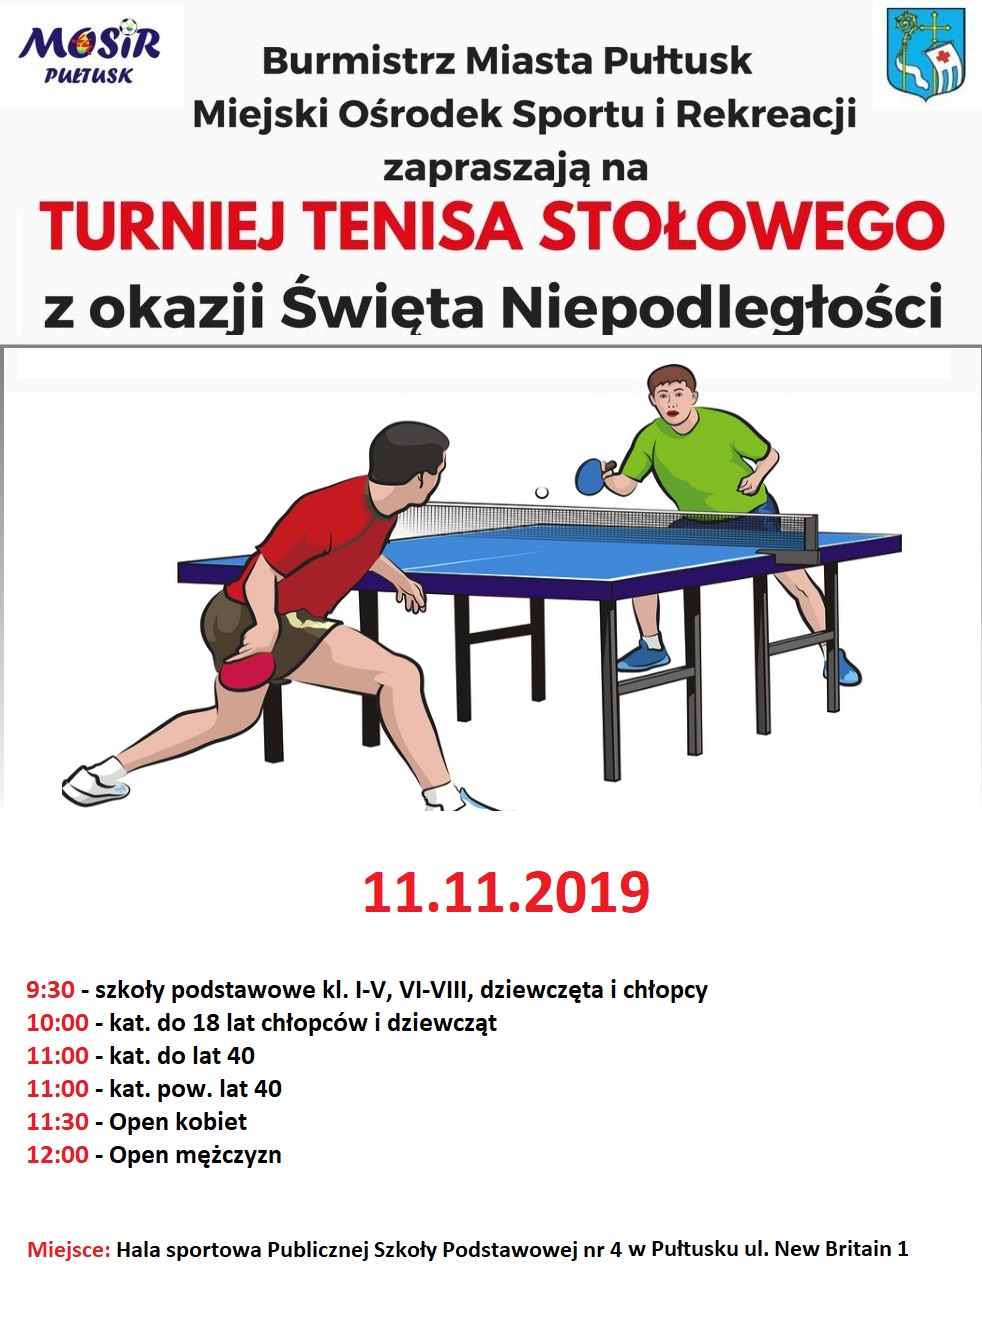 Plakat turnieju Turniej Tenisa Stołowego z okazji Święta Niepodległości w Pułtusku